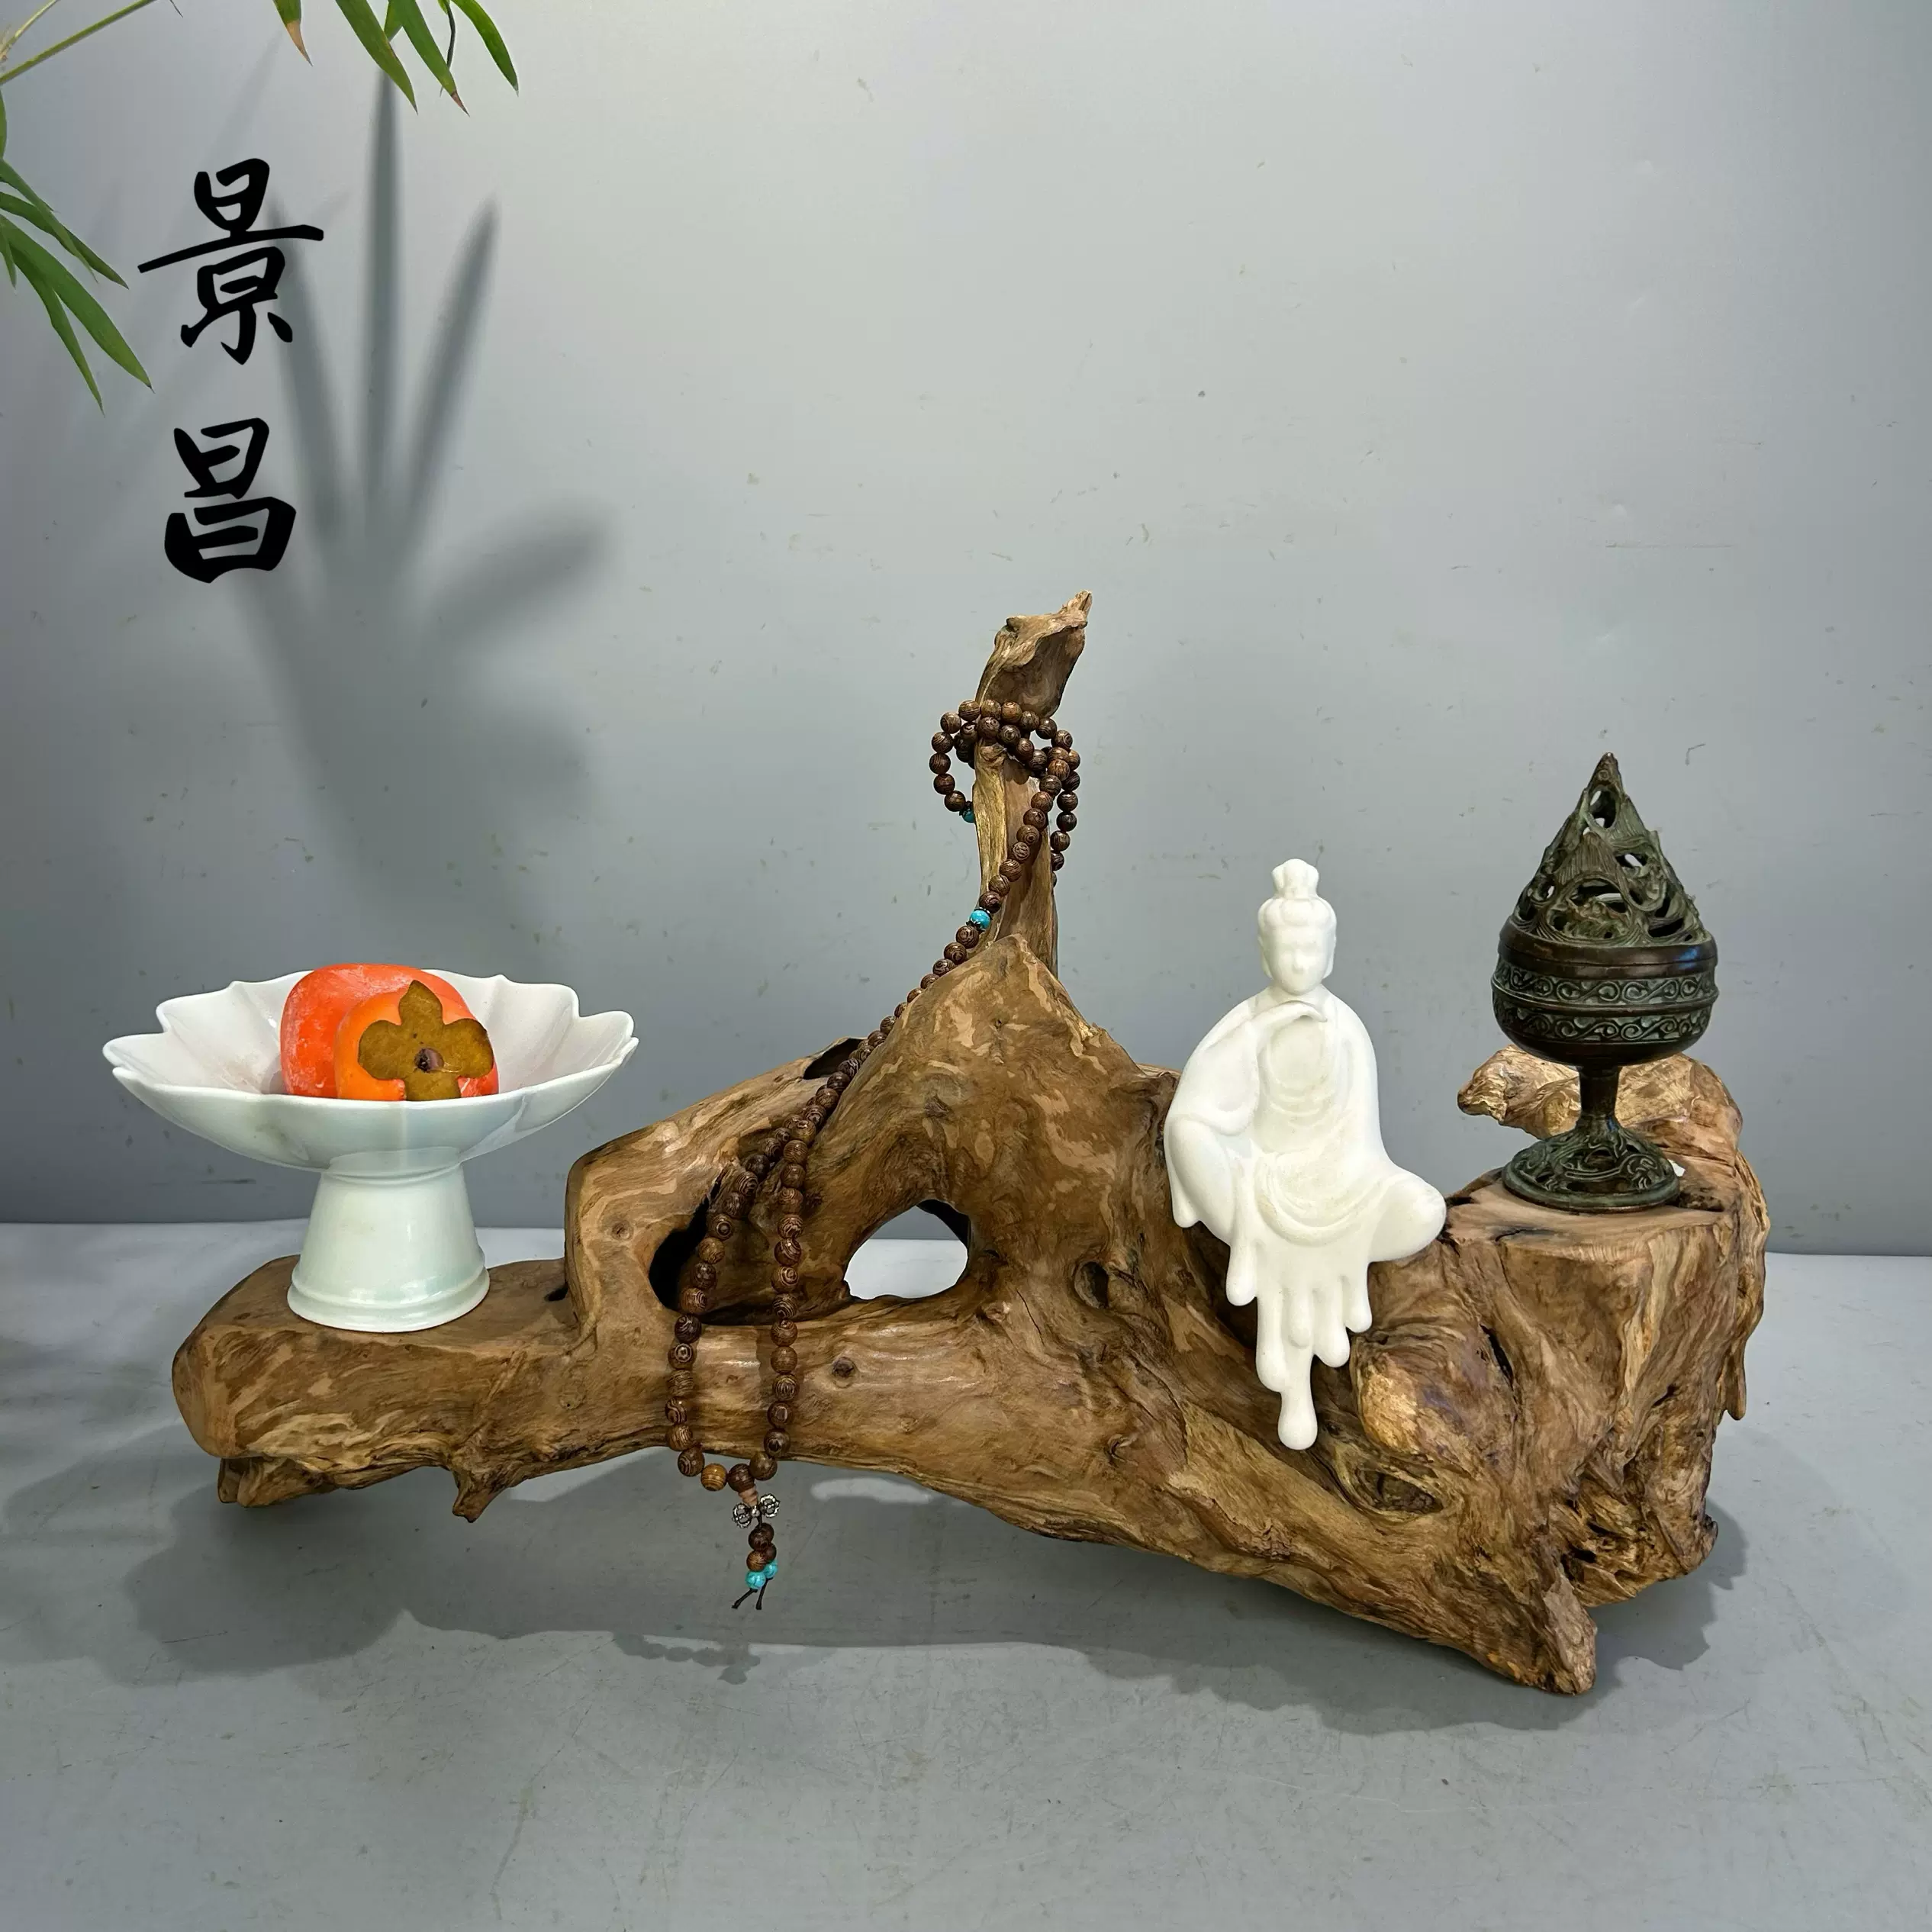 根雕摆件随形风化枯木底座艺术品天然原木玄关造景新中式茶台装饰 